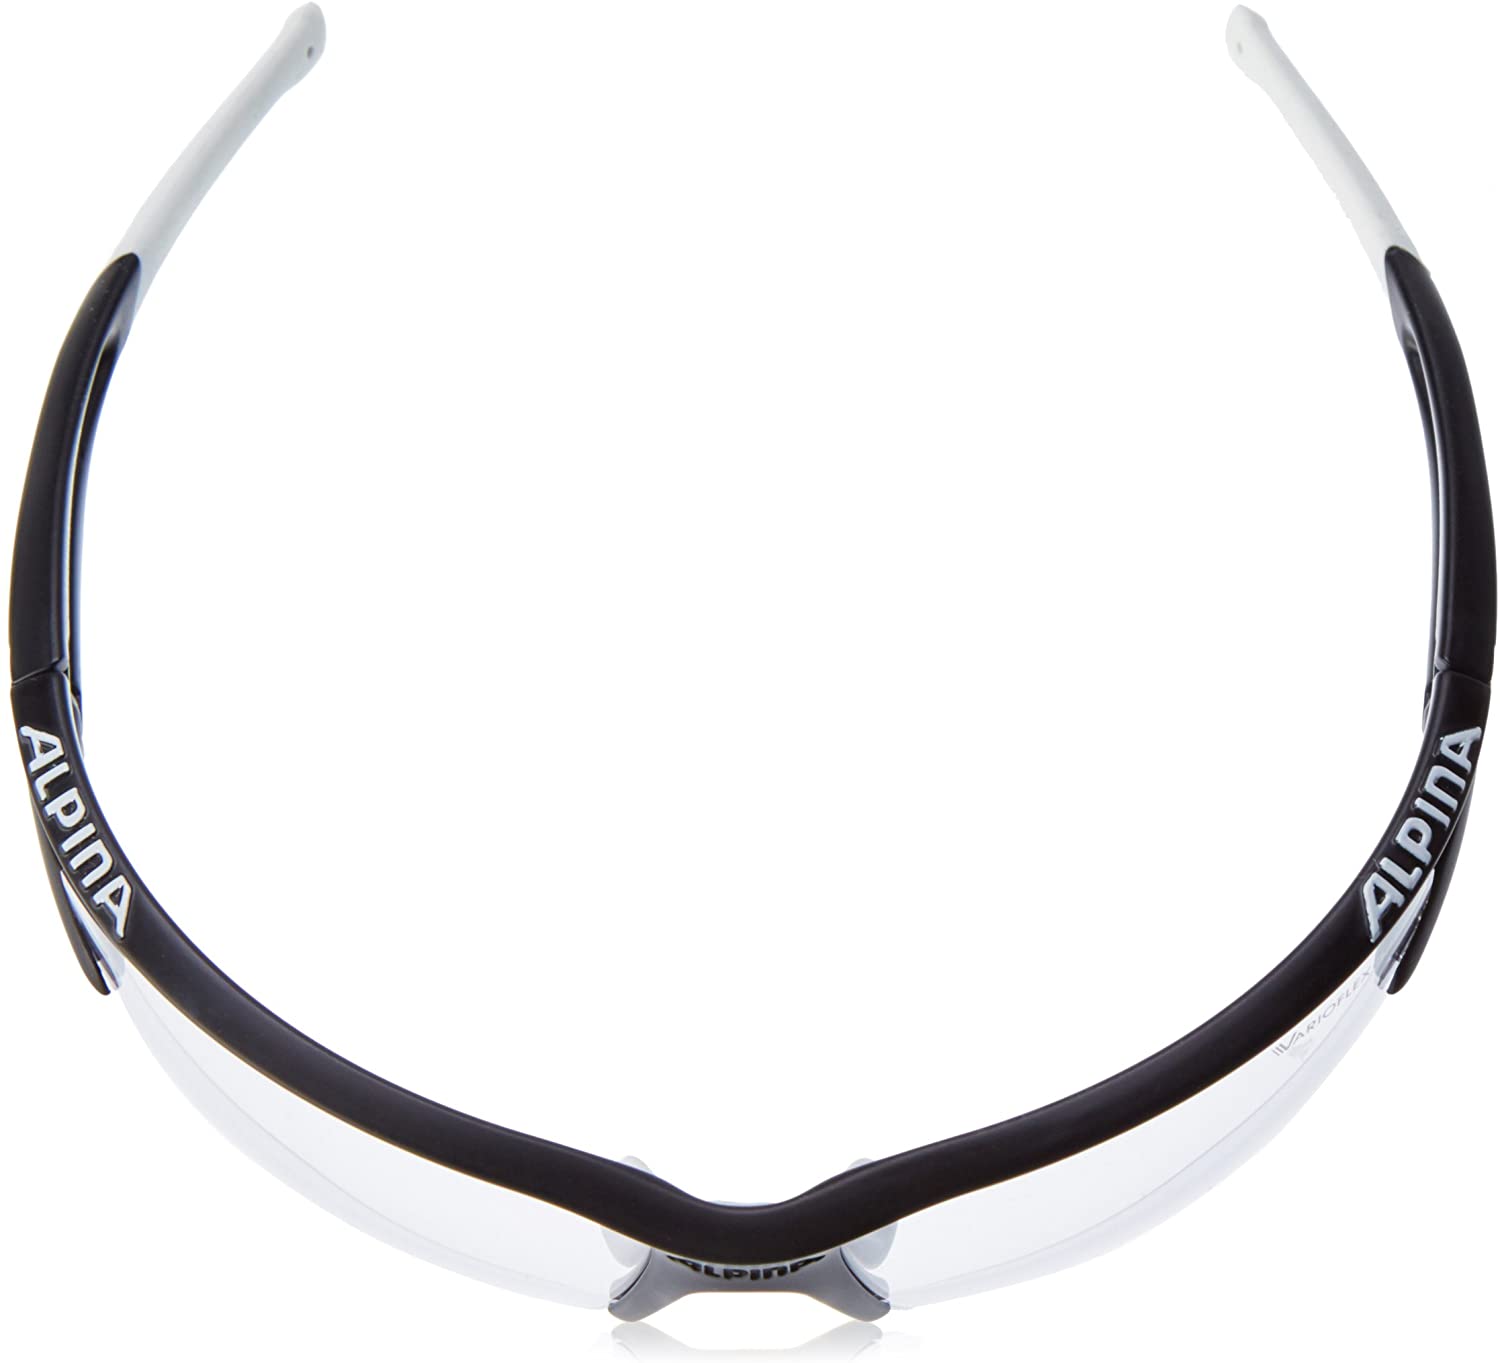 Alpina Sportbrille EYE-5 HR VL+black matt white